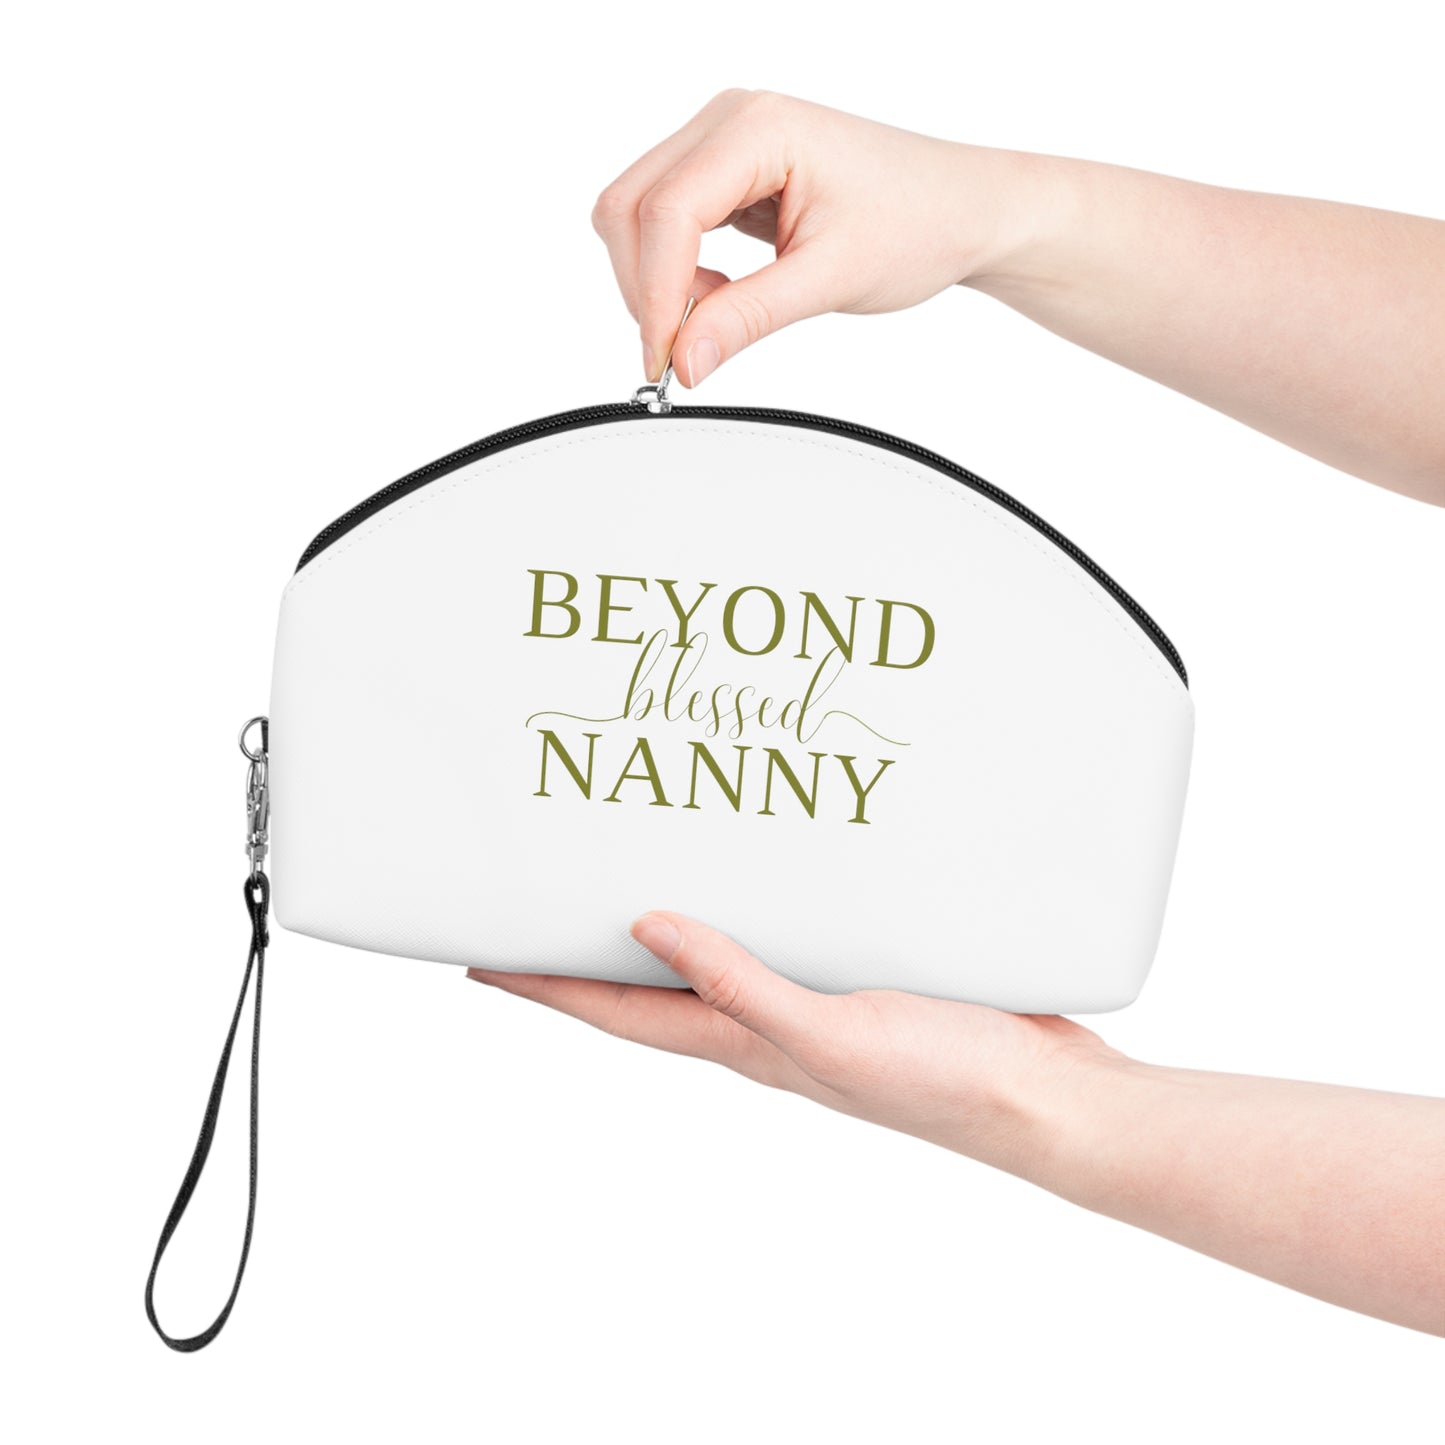 Beyond Blessed Nanny Makeup Bag - Olive Green